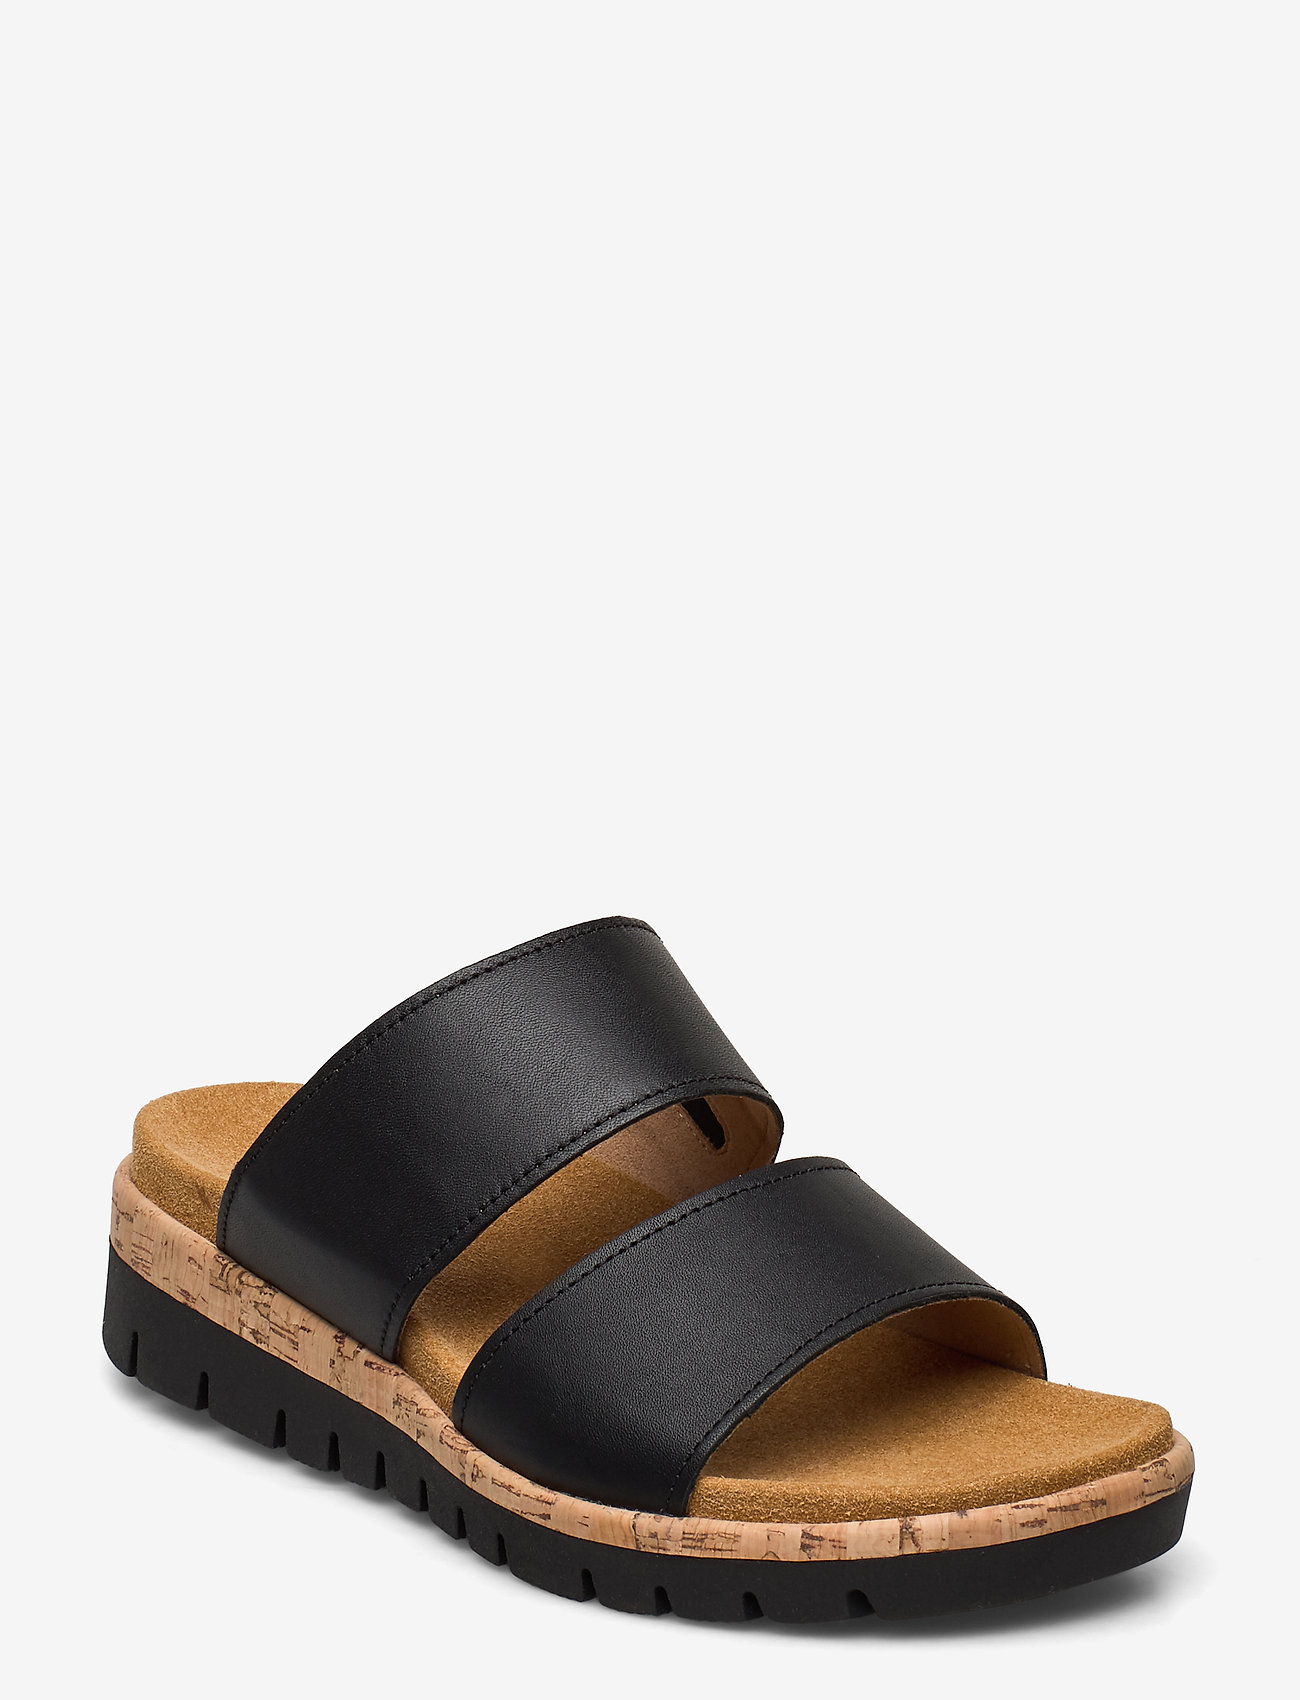 gabor black sandals